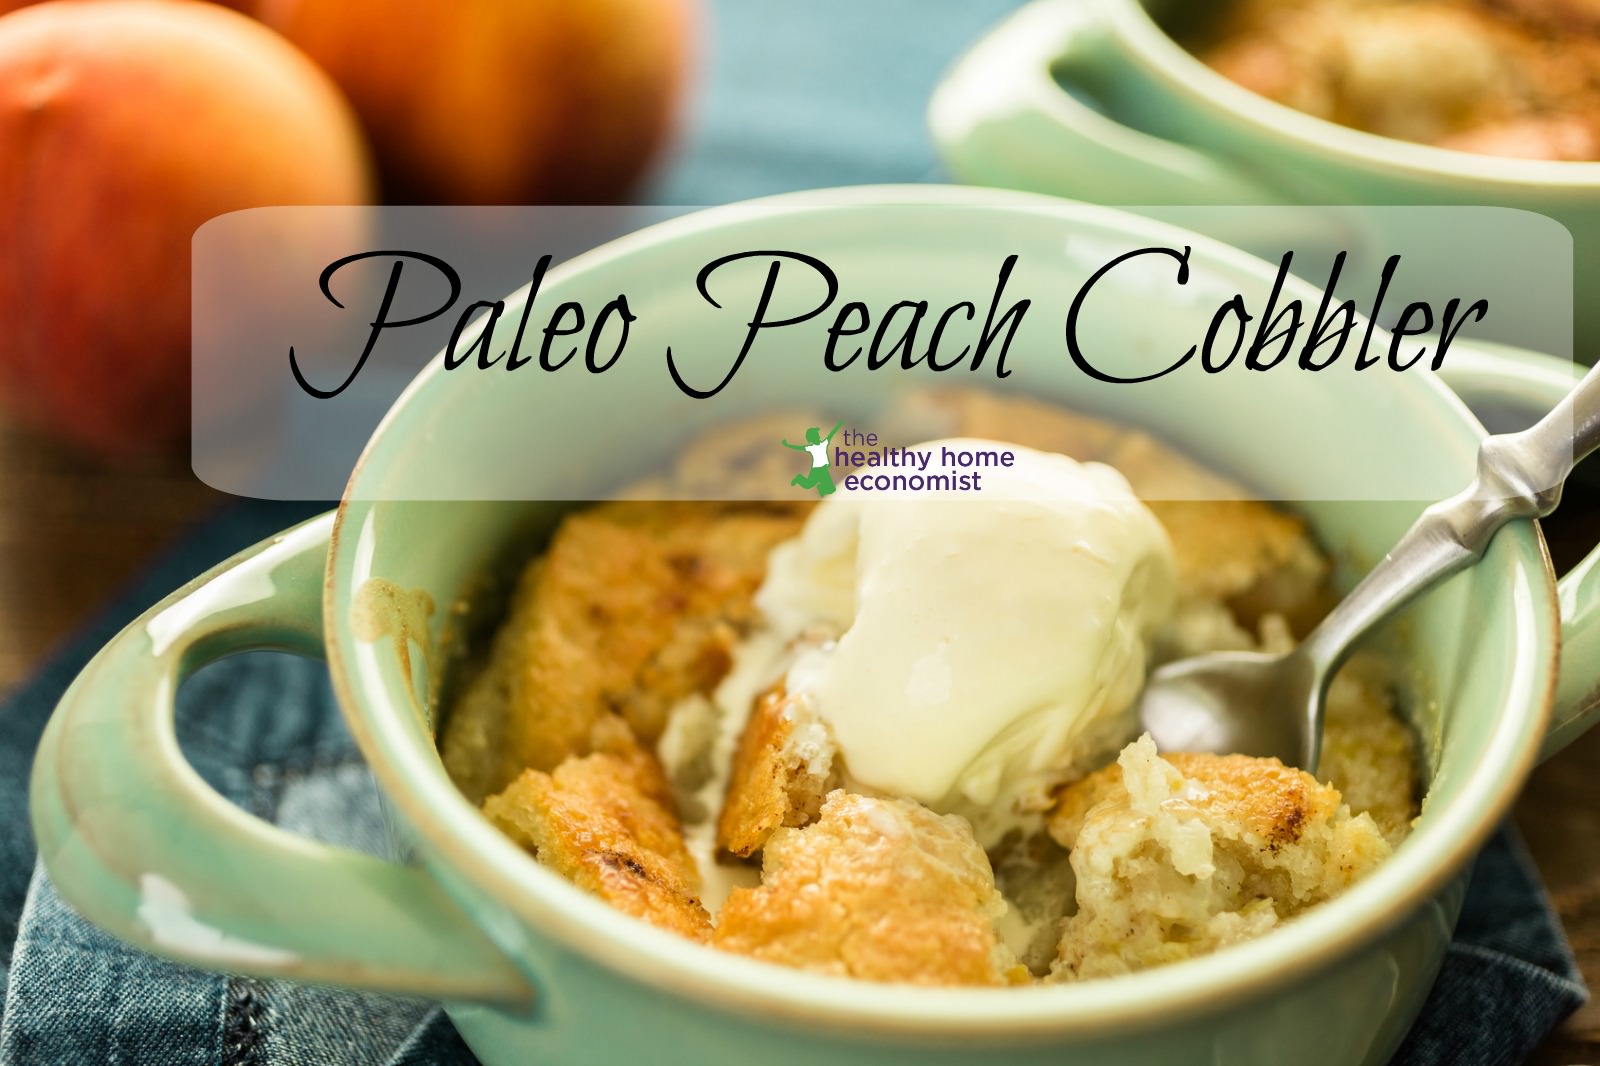 peach cobbler recipe